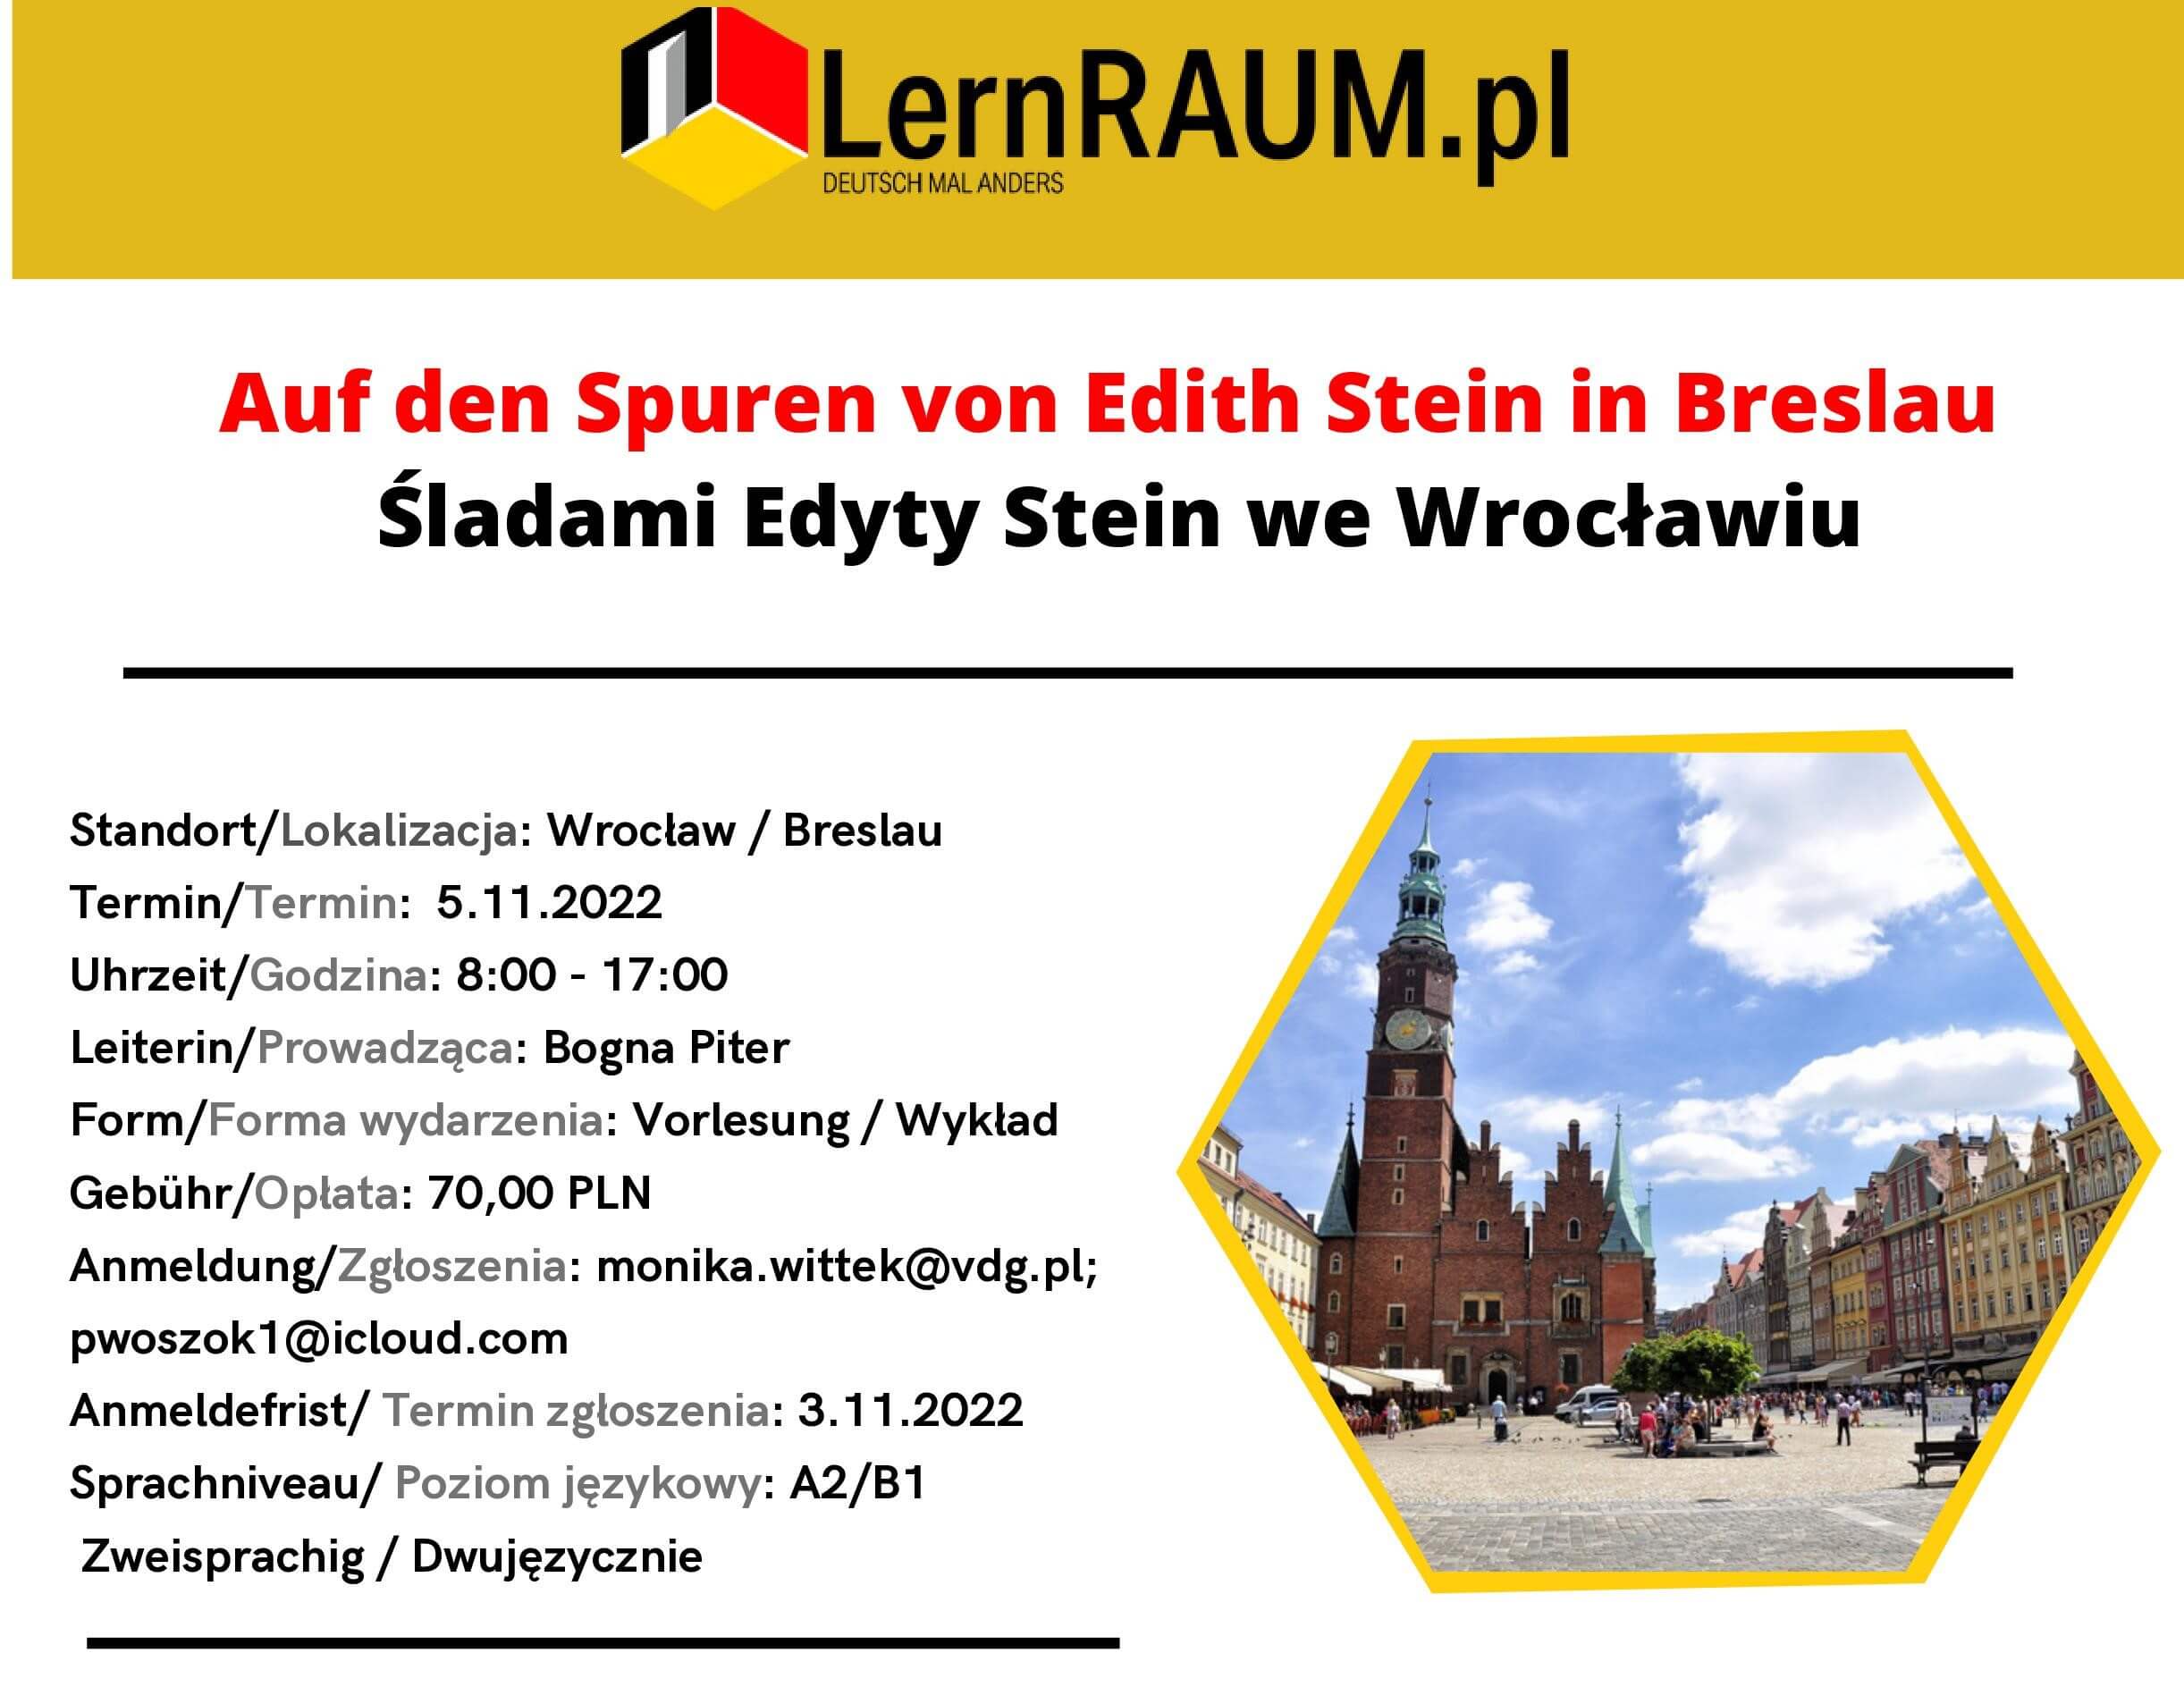 Śladami Edyty Stein we Wrocławiu